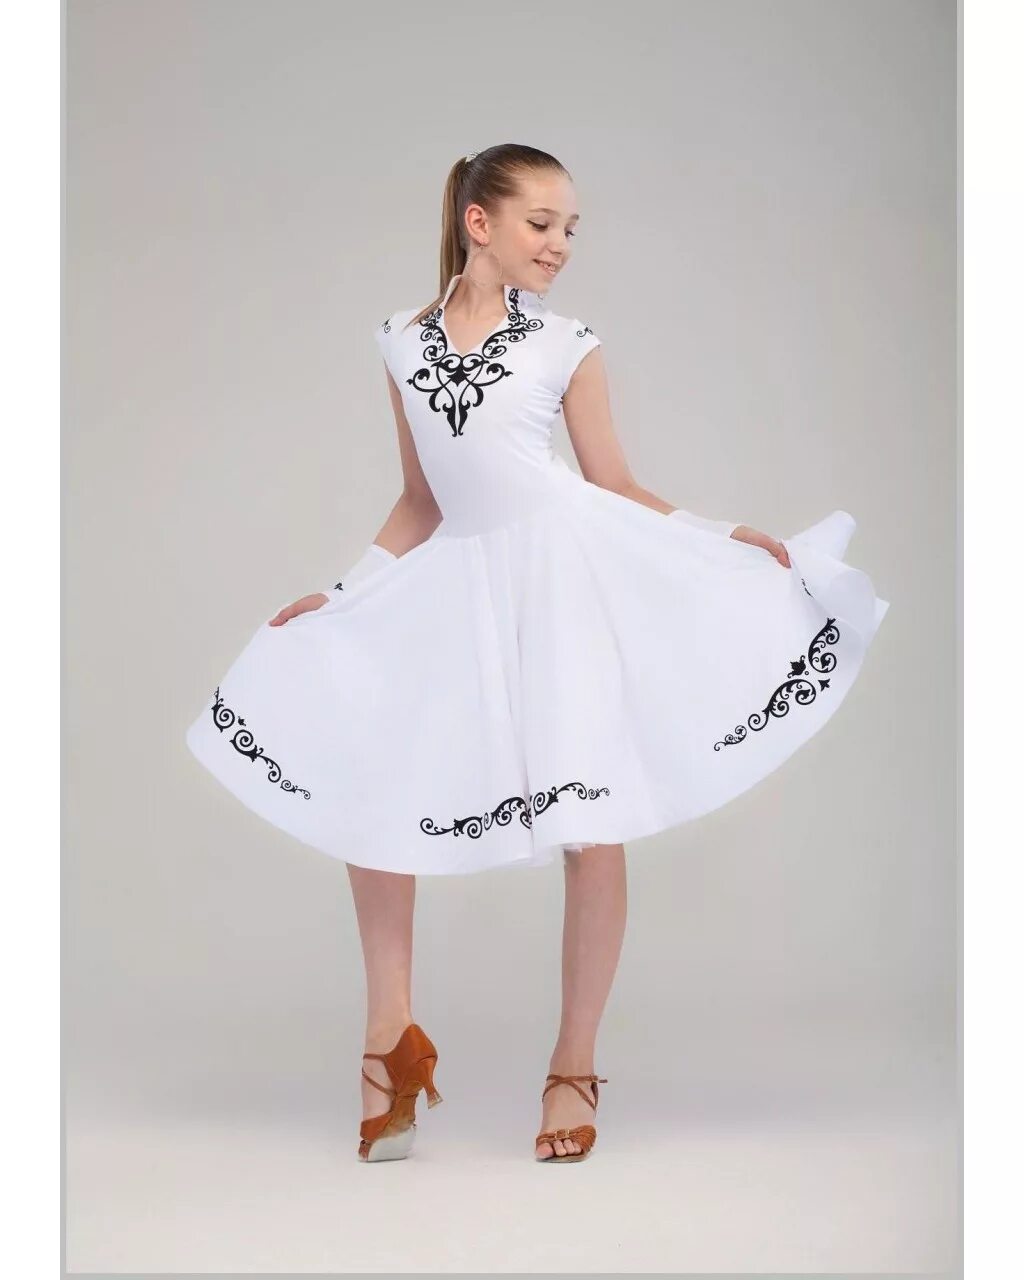 Бейсик платье для бальных танцев. Белое платье для бальных танцев. Рейтинговое платье белое. Белое рейтинговое платье для бальных танцев. Юбка соска